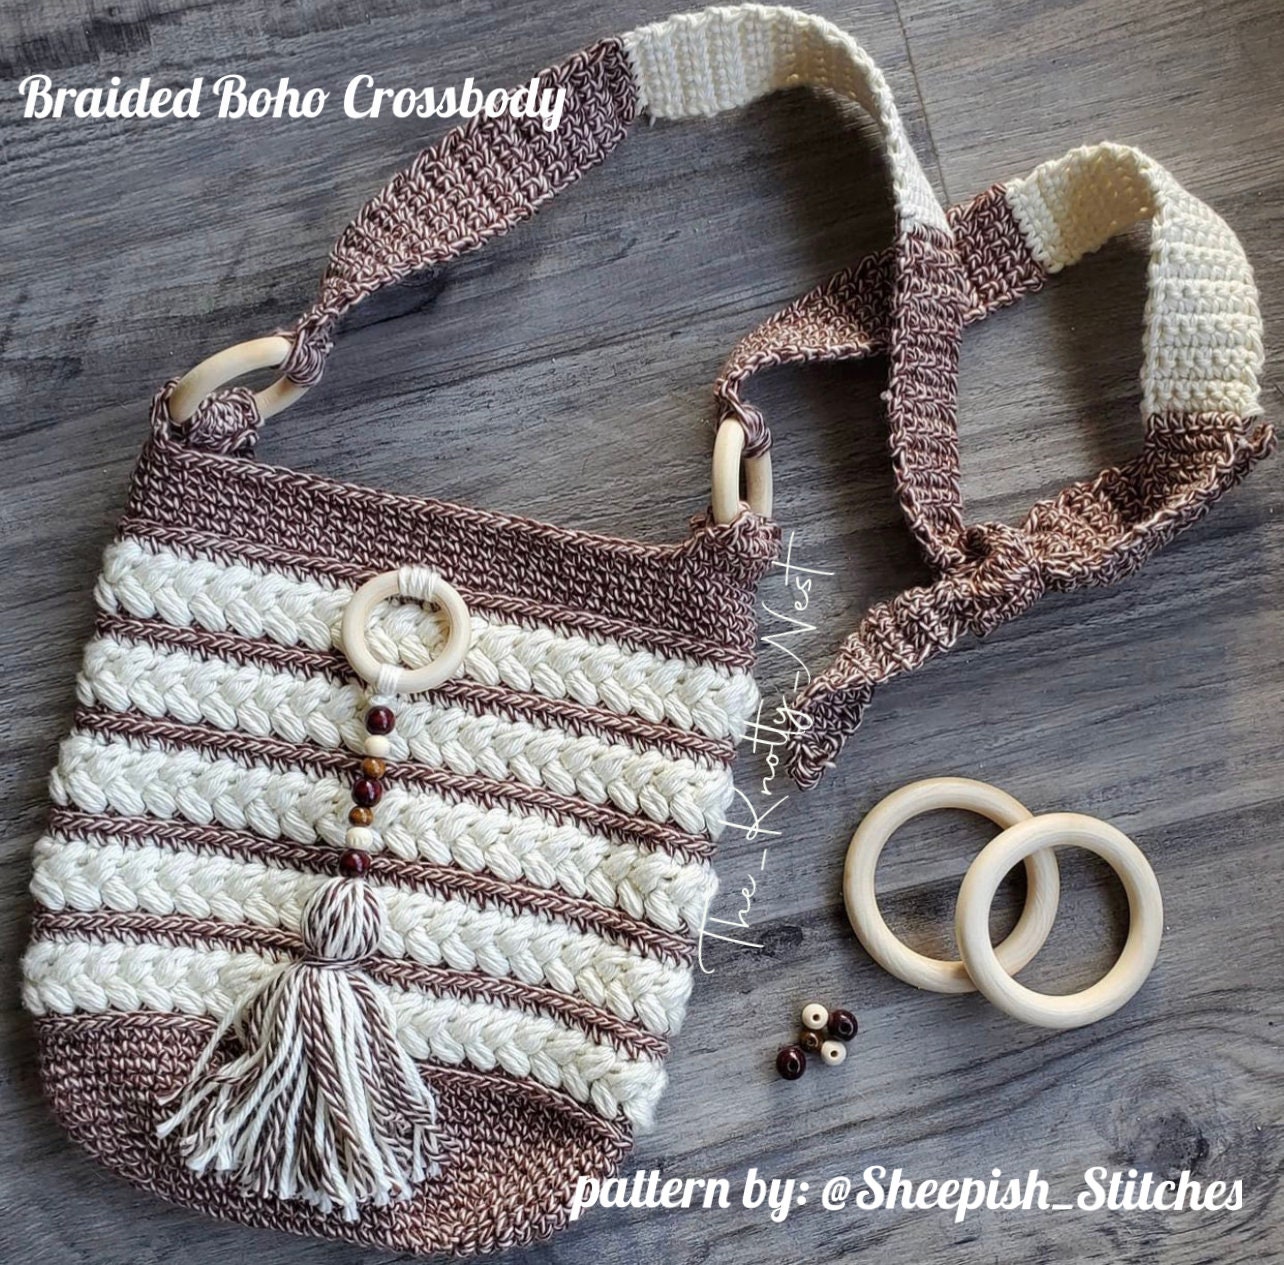 Braided Boho Crossbody Crochet Pattern by Sheepish Stitches